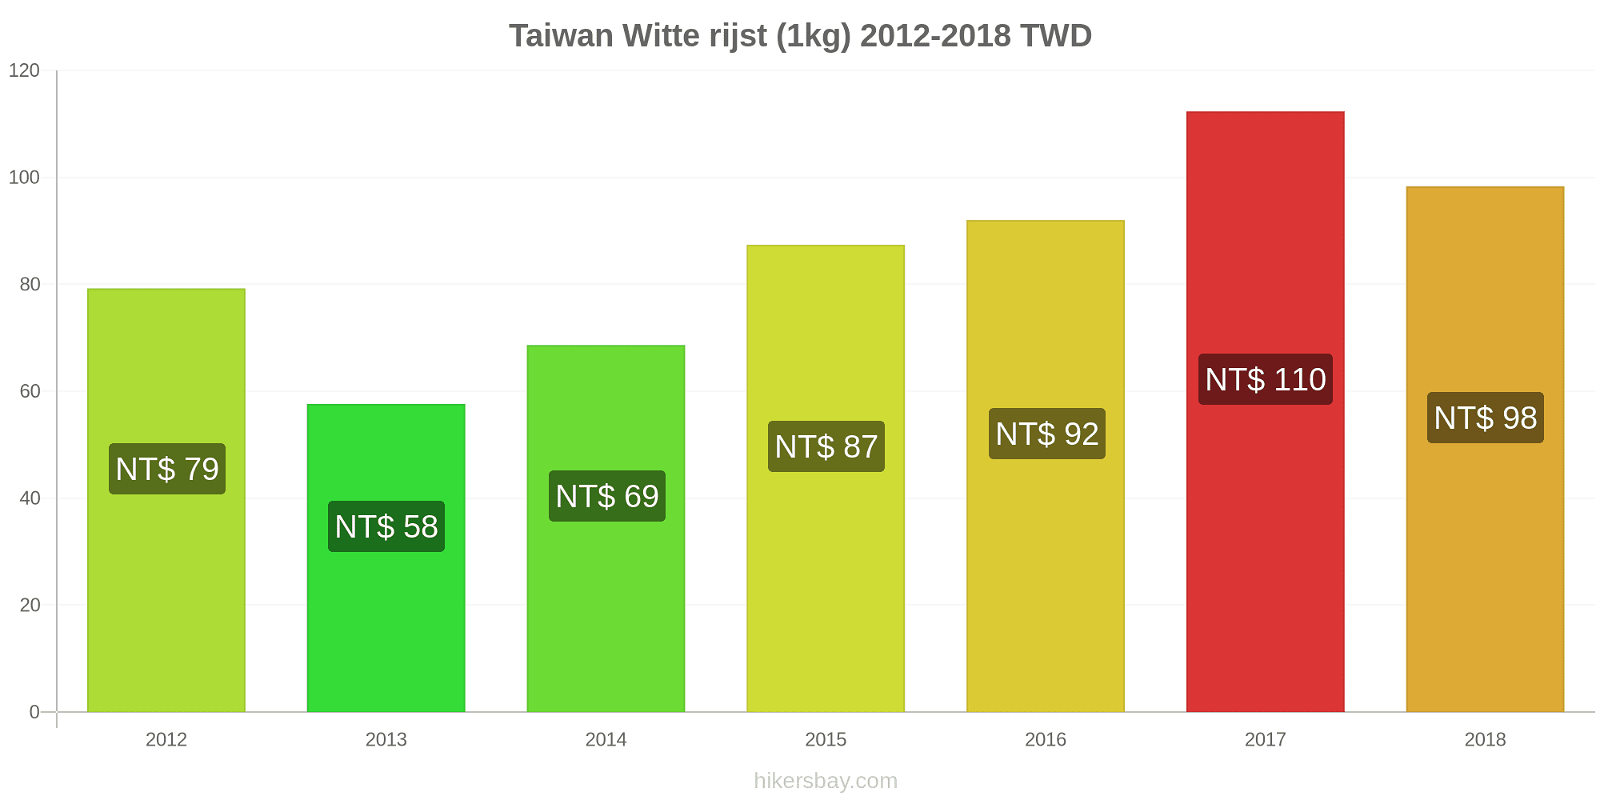 Taiwan prijswijzigingen Rijst (wit) (1kg) hikersbay.com